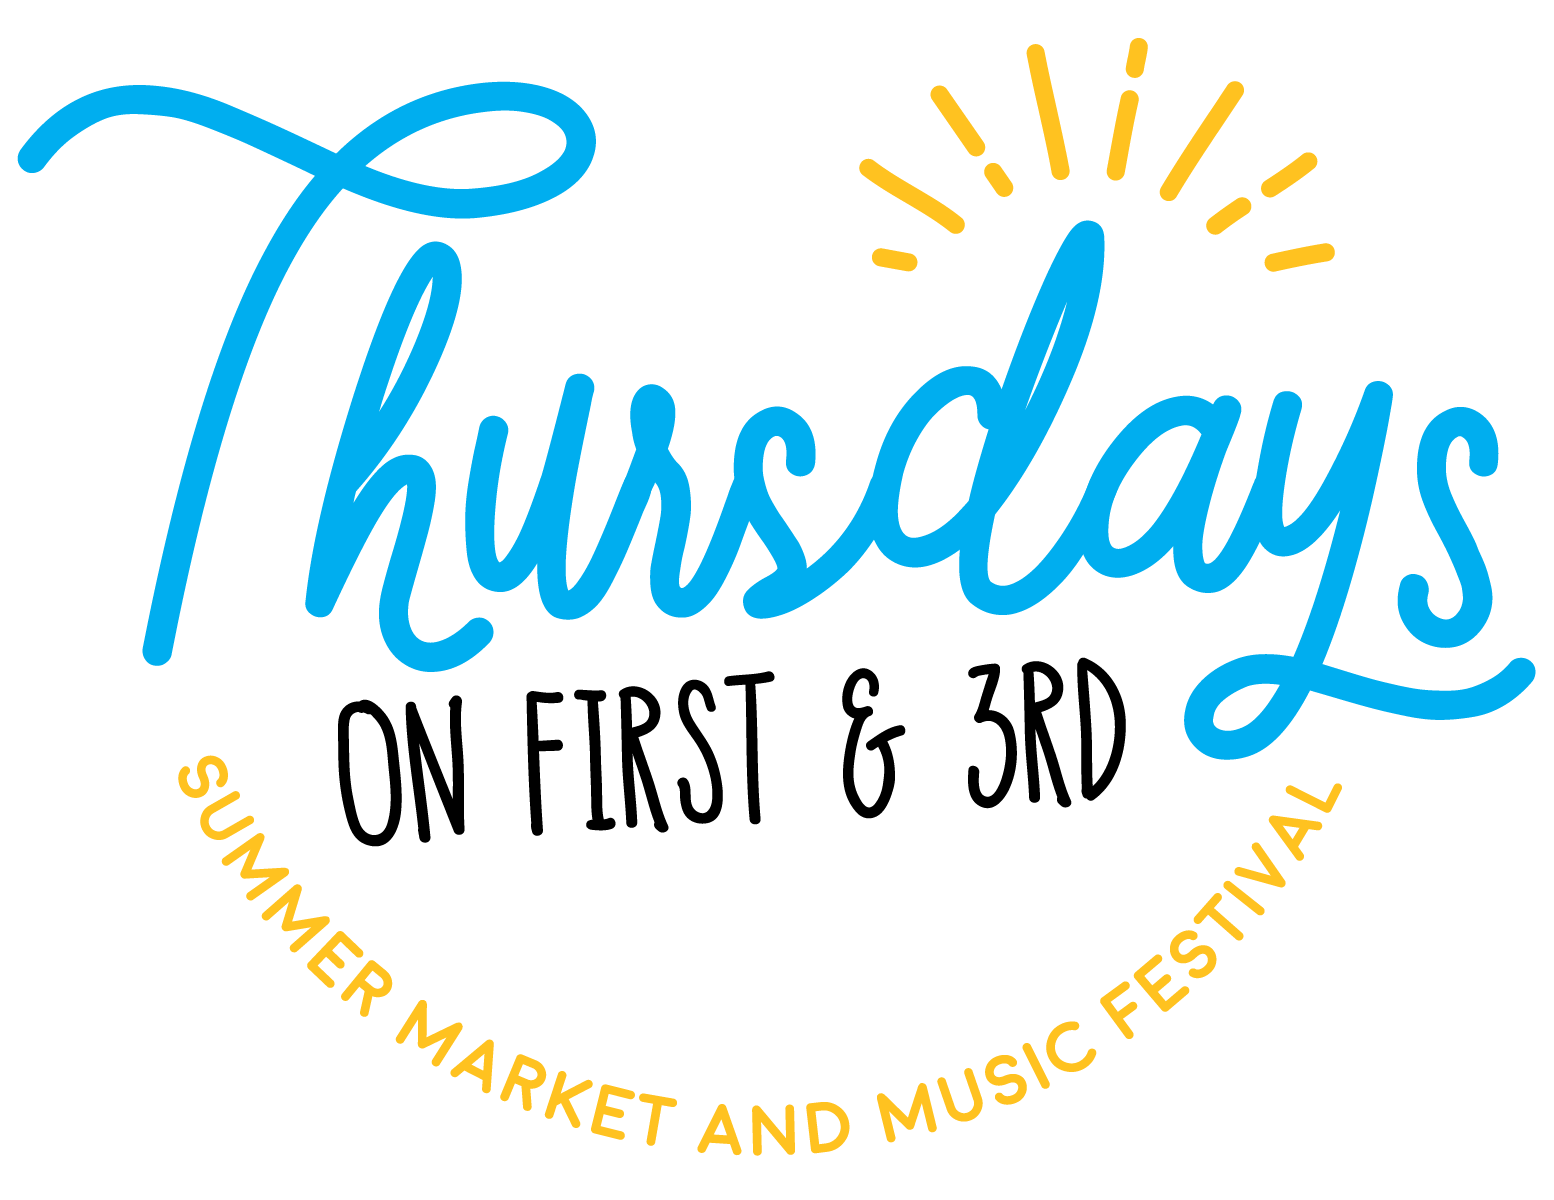 2017 Thursday Summer Market and Music Festival